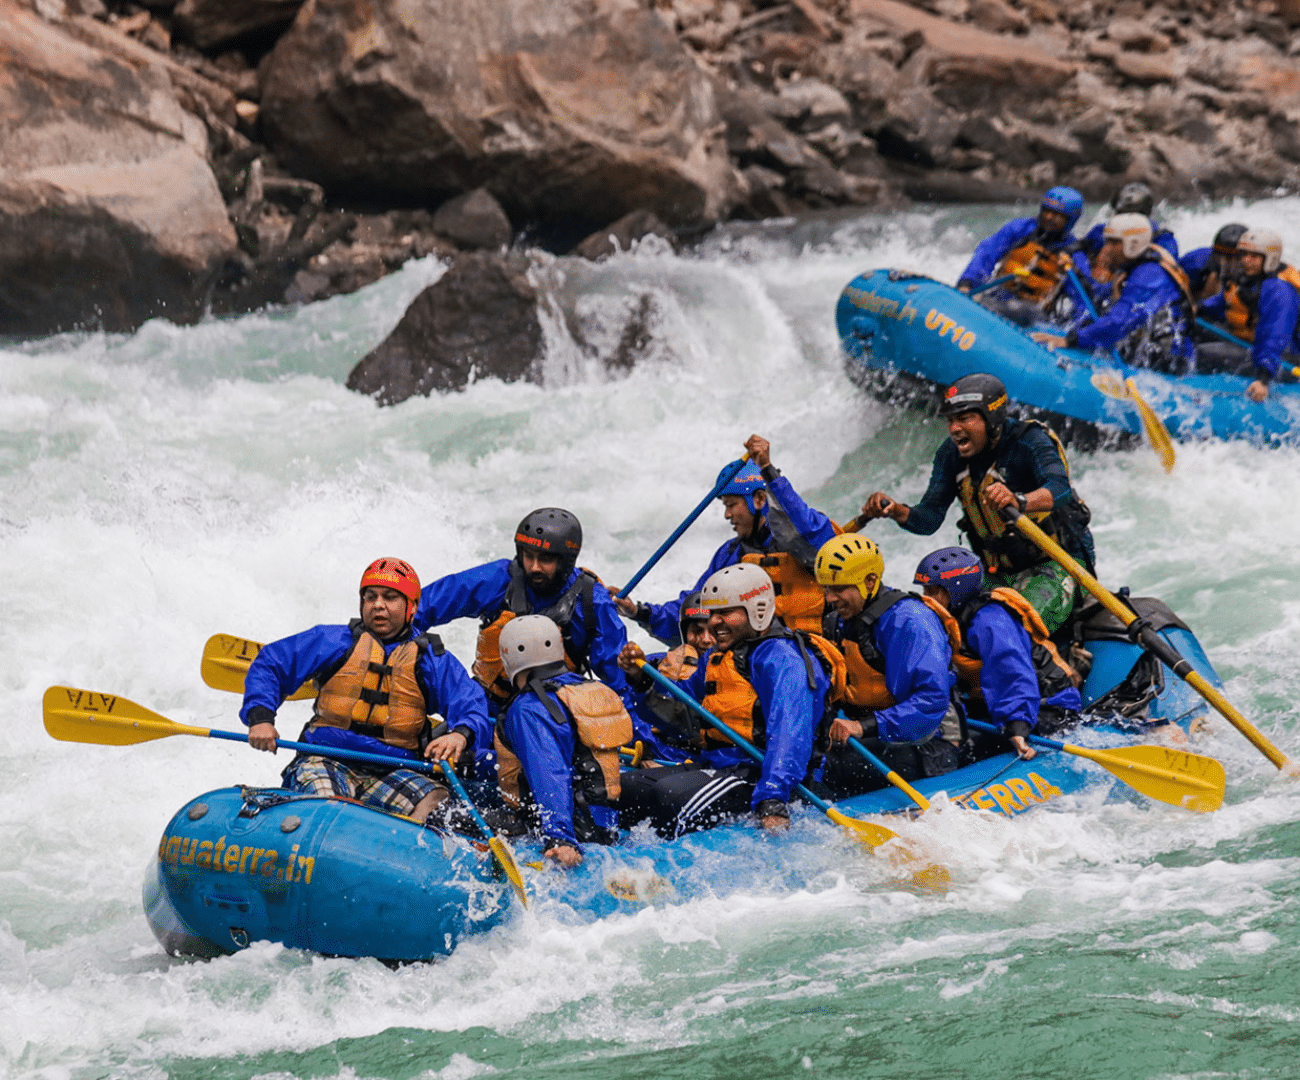 River rafting in uttarakhand tour package